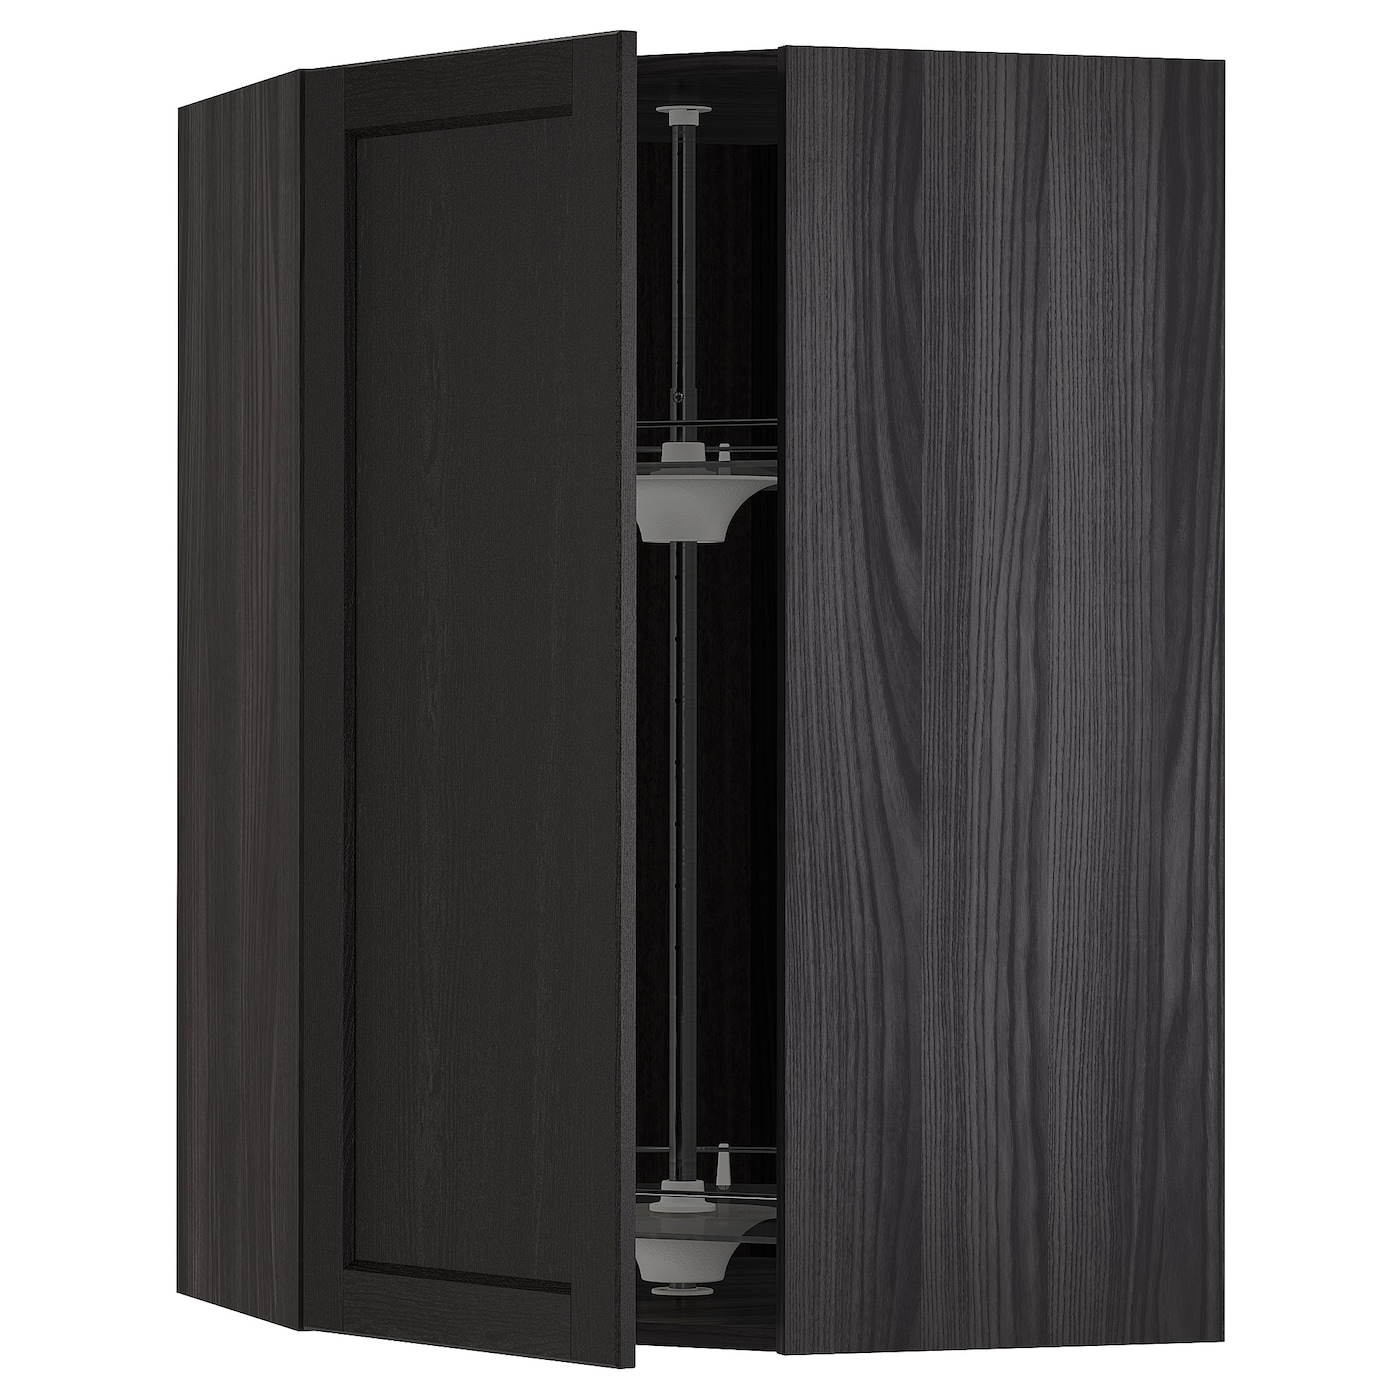 Угловой навесной шкаф с каруселью - METOD  IKEA/  МЕТОД ИКЕА, 100х68 см, черный